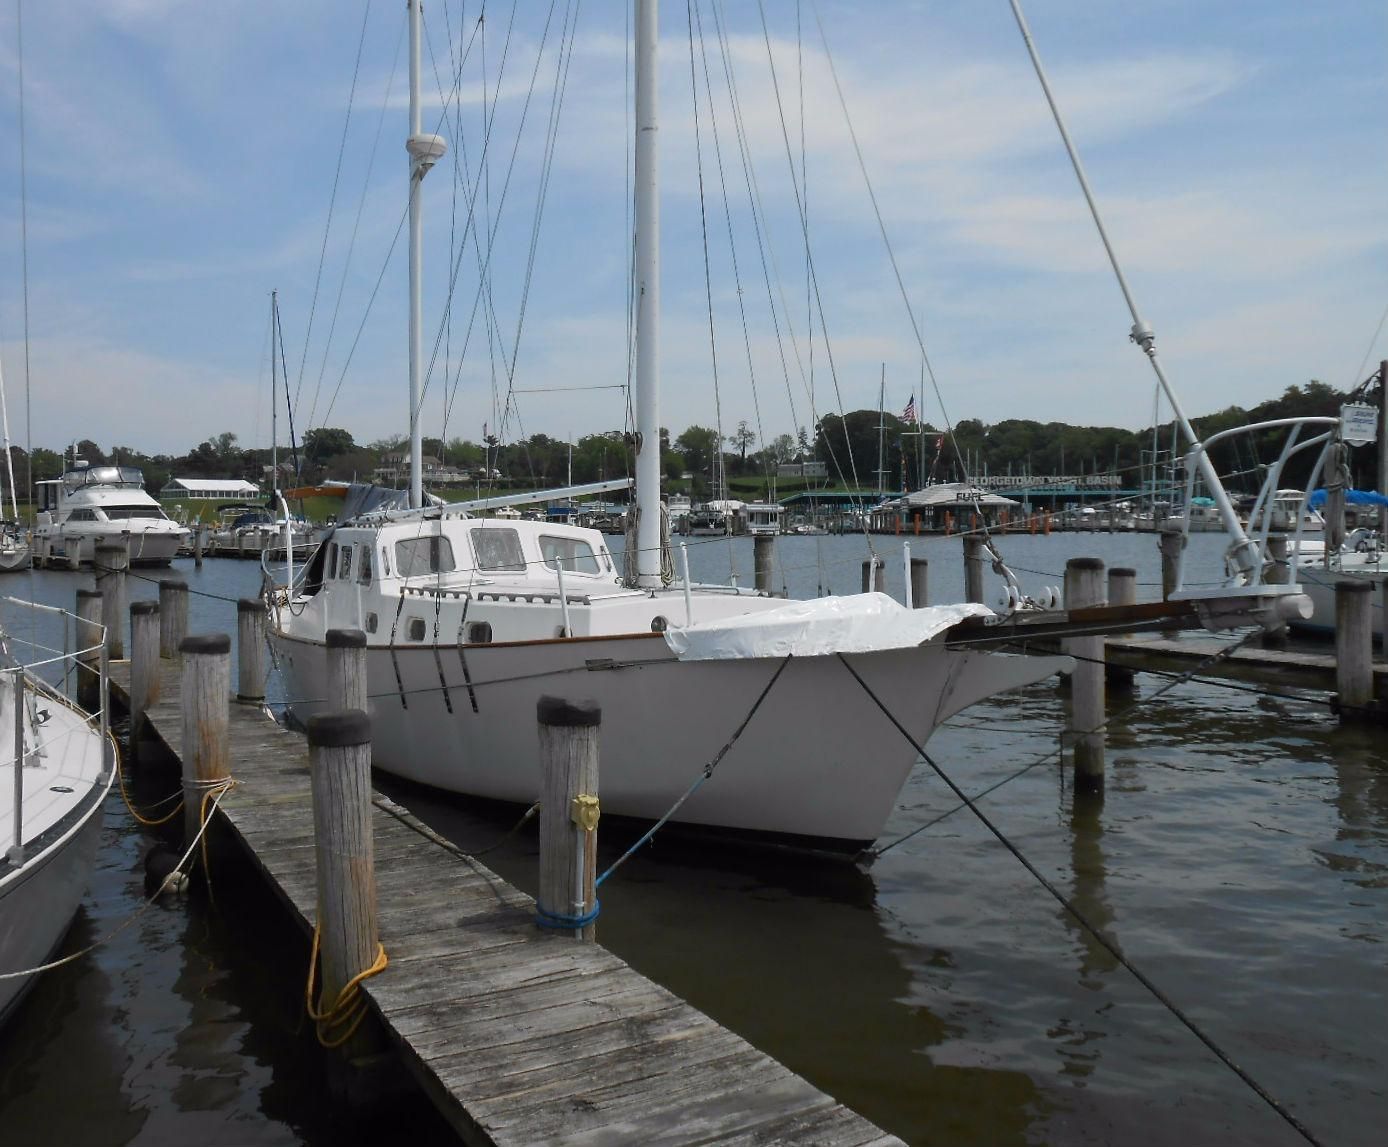 newport oregon sailboats for sale